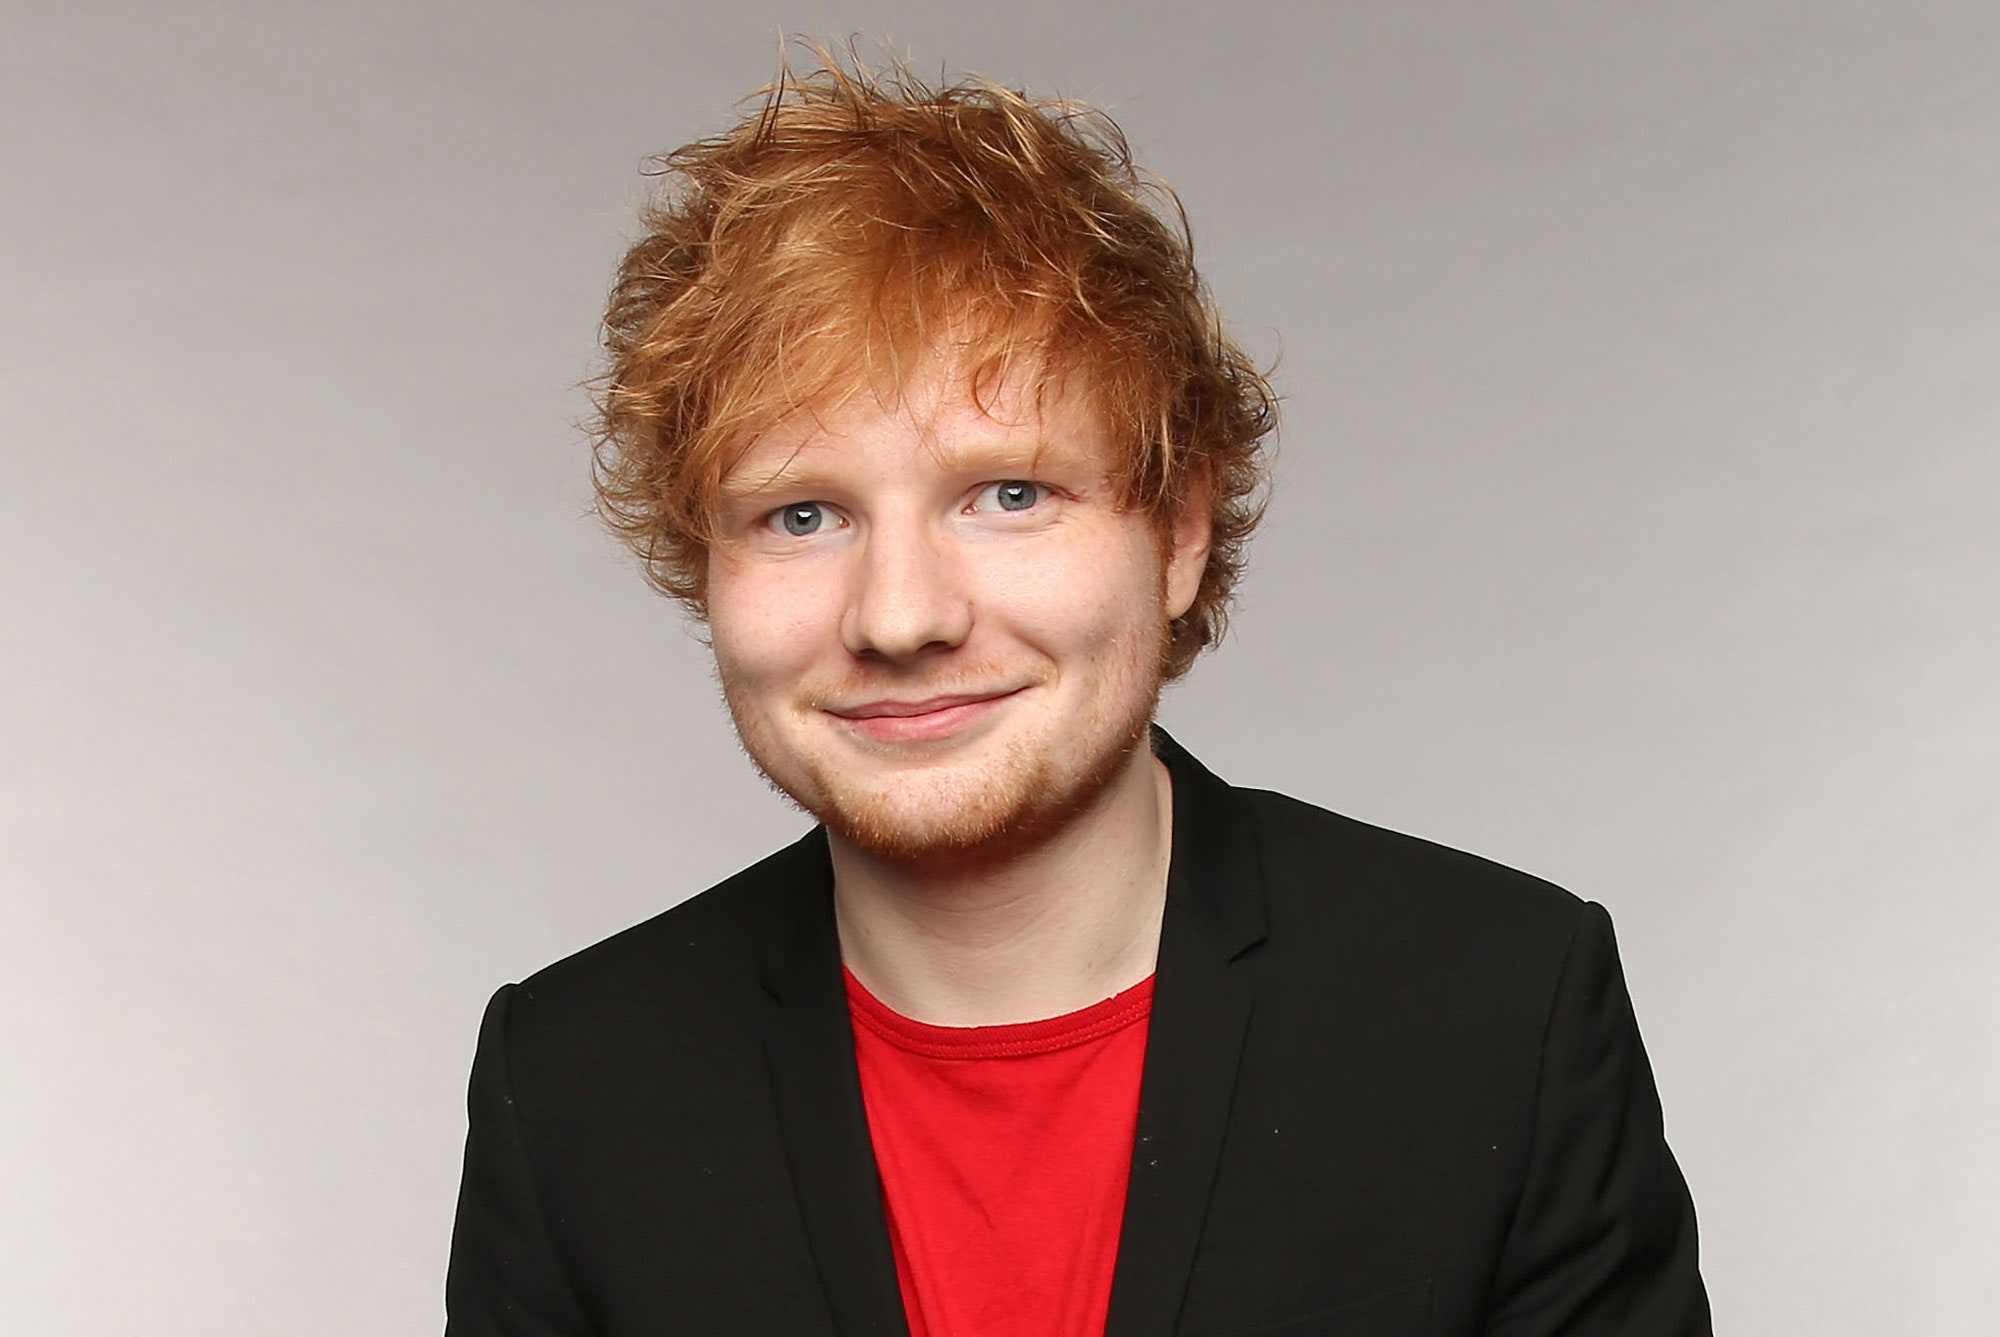 Ed Sheeran anuncia su nuevo sencillo "Bad Habits"